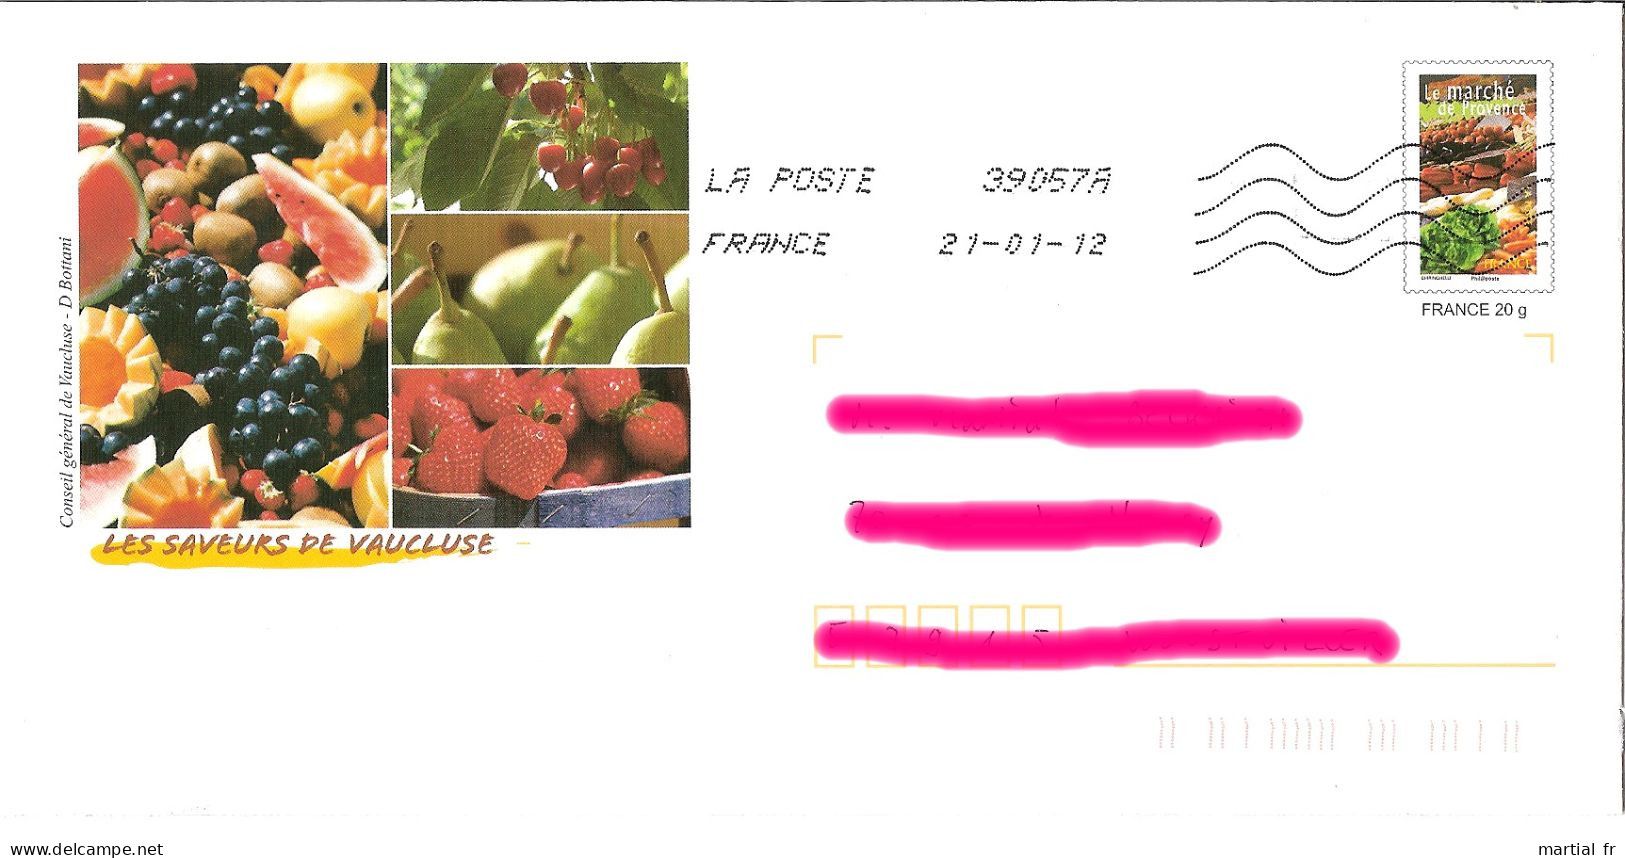 PAP FRANCE FRUIT FRUCHT OBST VAUCLUSE RAISIN PASTEQUE MELON CERISE POIRE FRAISE Marché Provence FRUIT Grape WATER MELON - Obst & Früchte